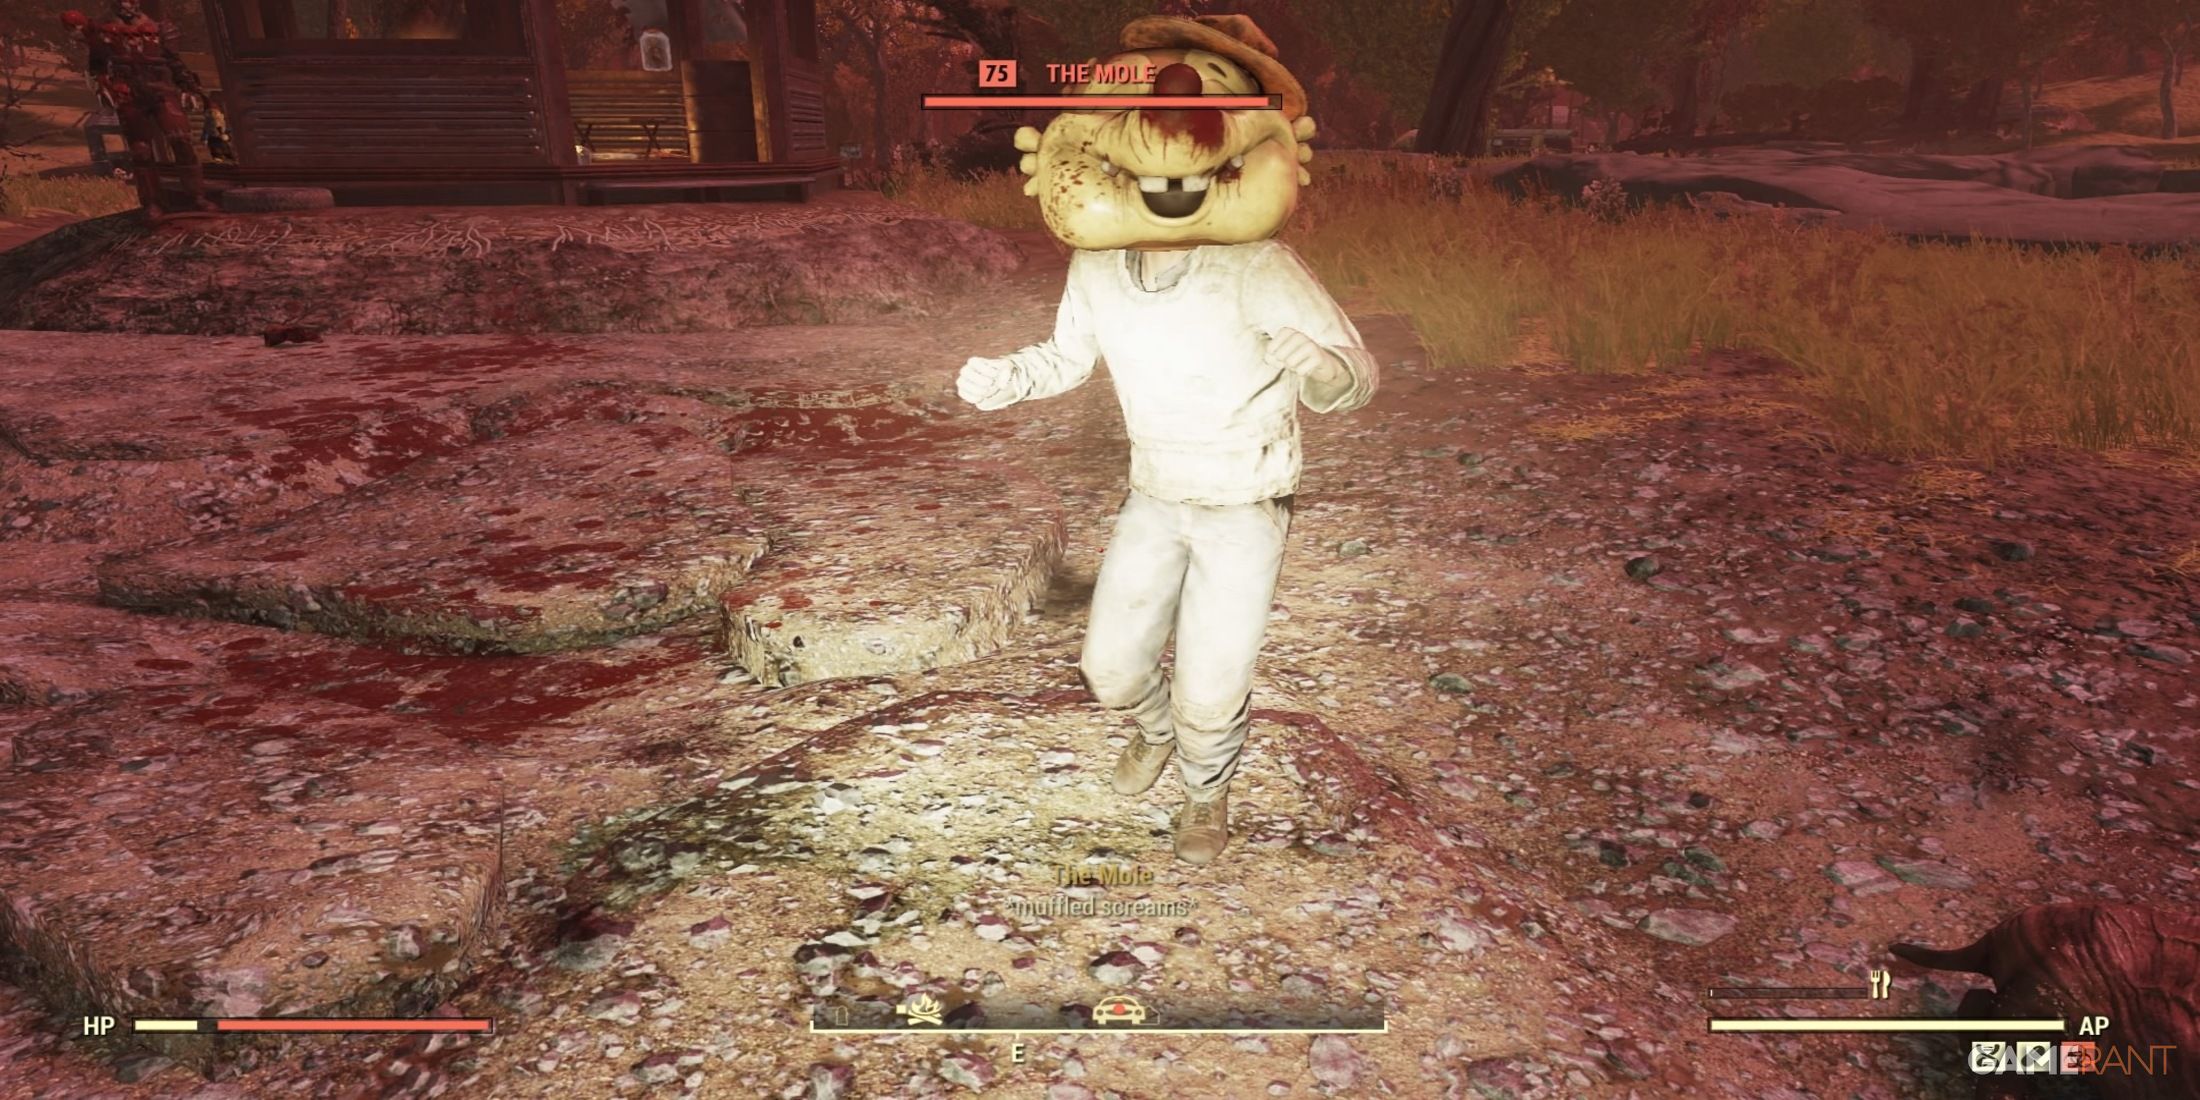 The Mole Attack in Fallout 76